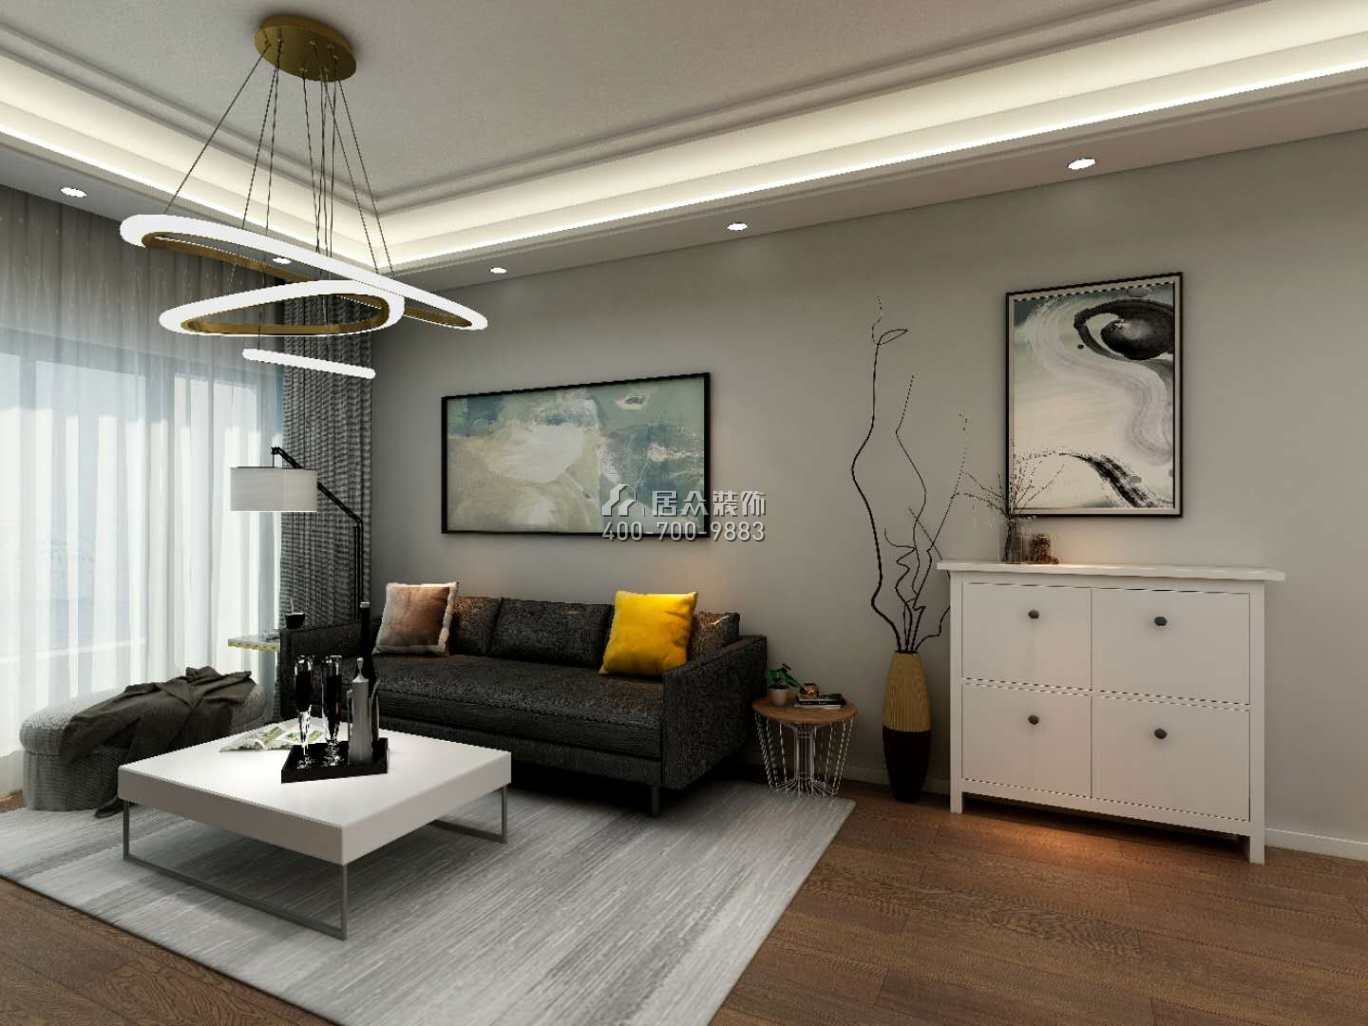 龙光玖龙玺100平方米现代简约风格平层户型客厅装修效果图